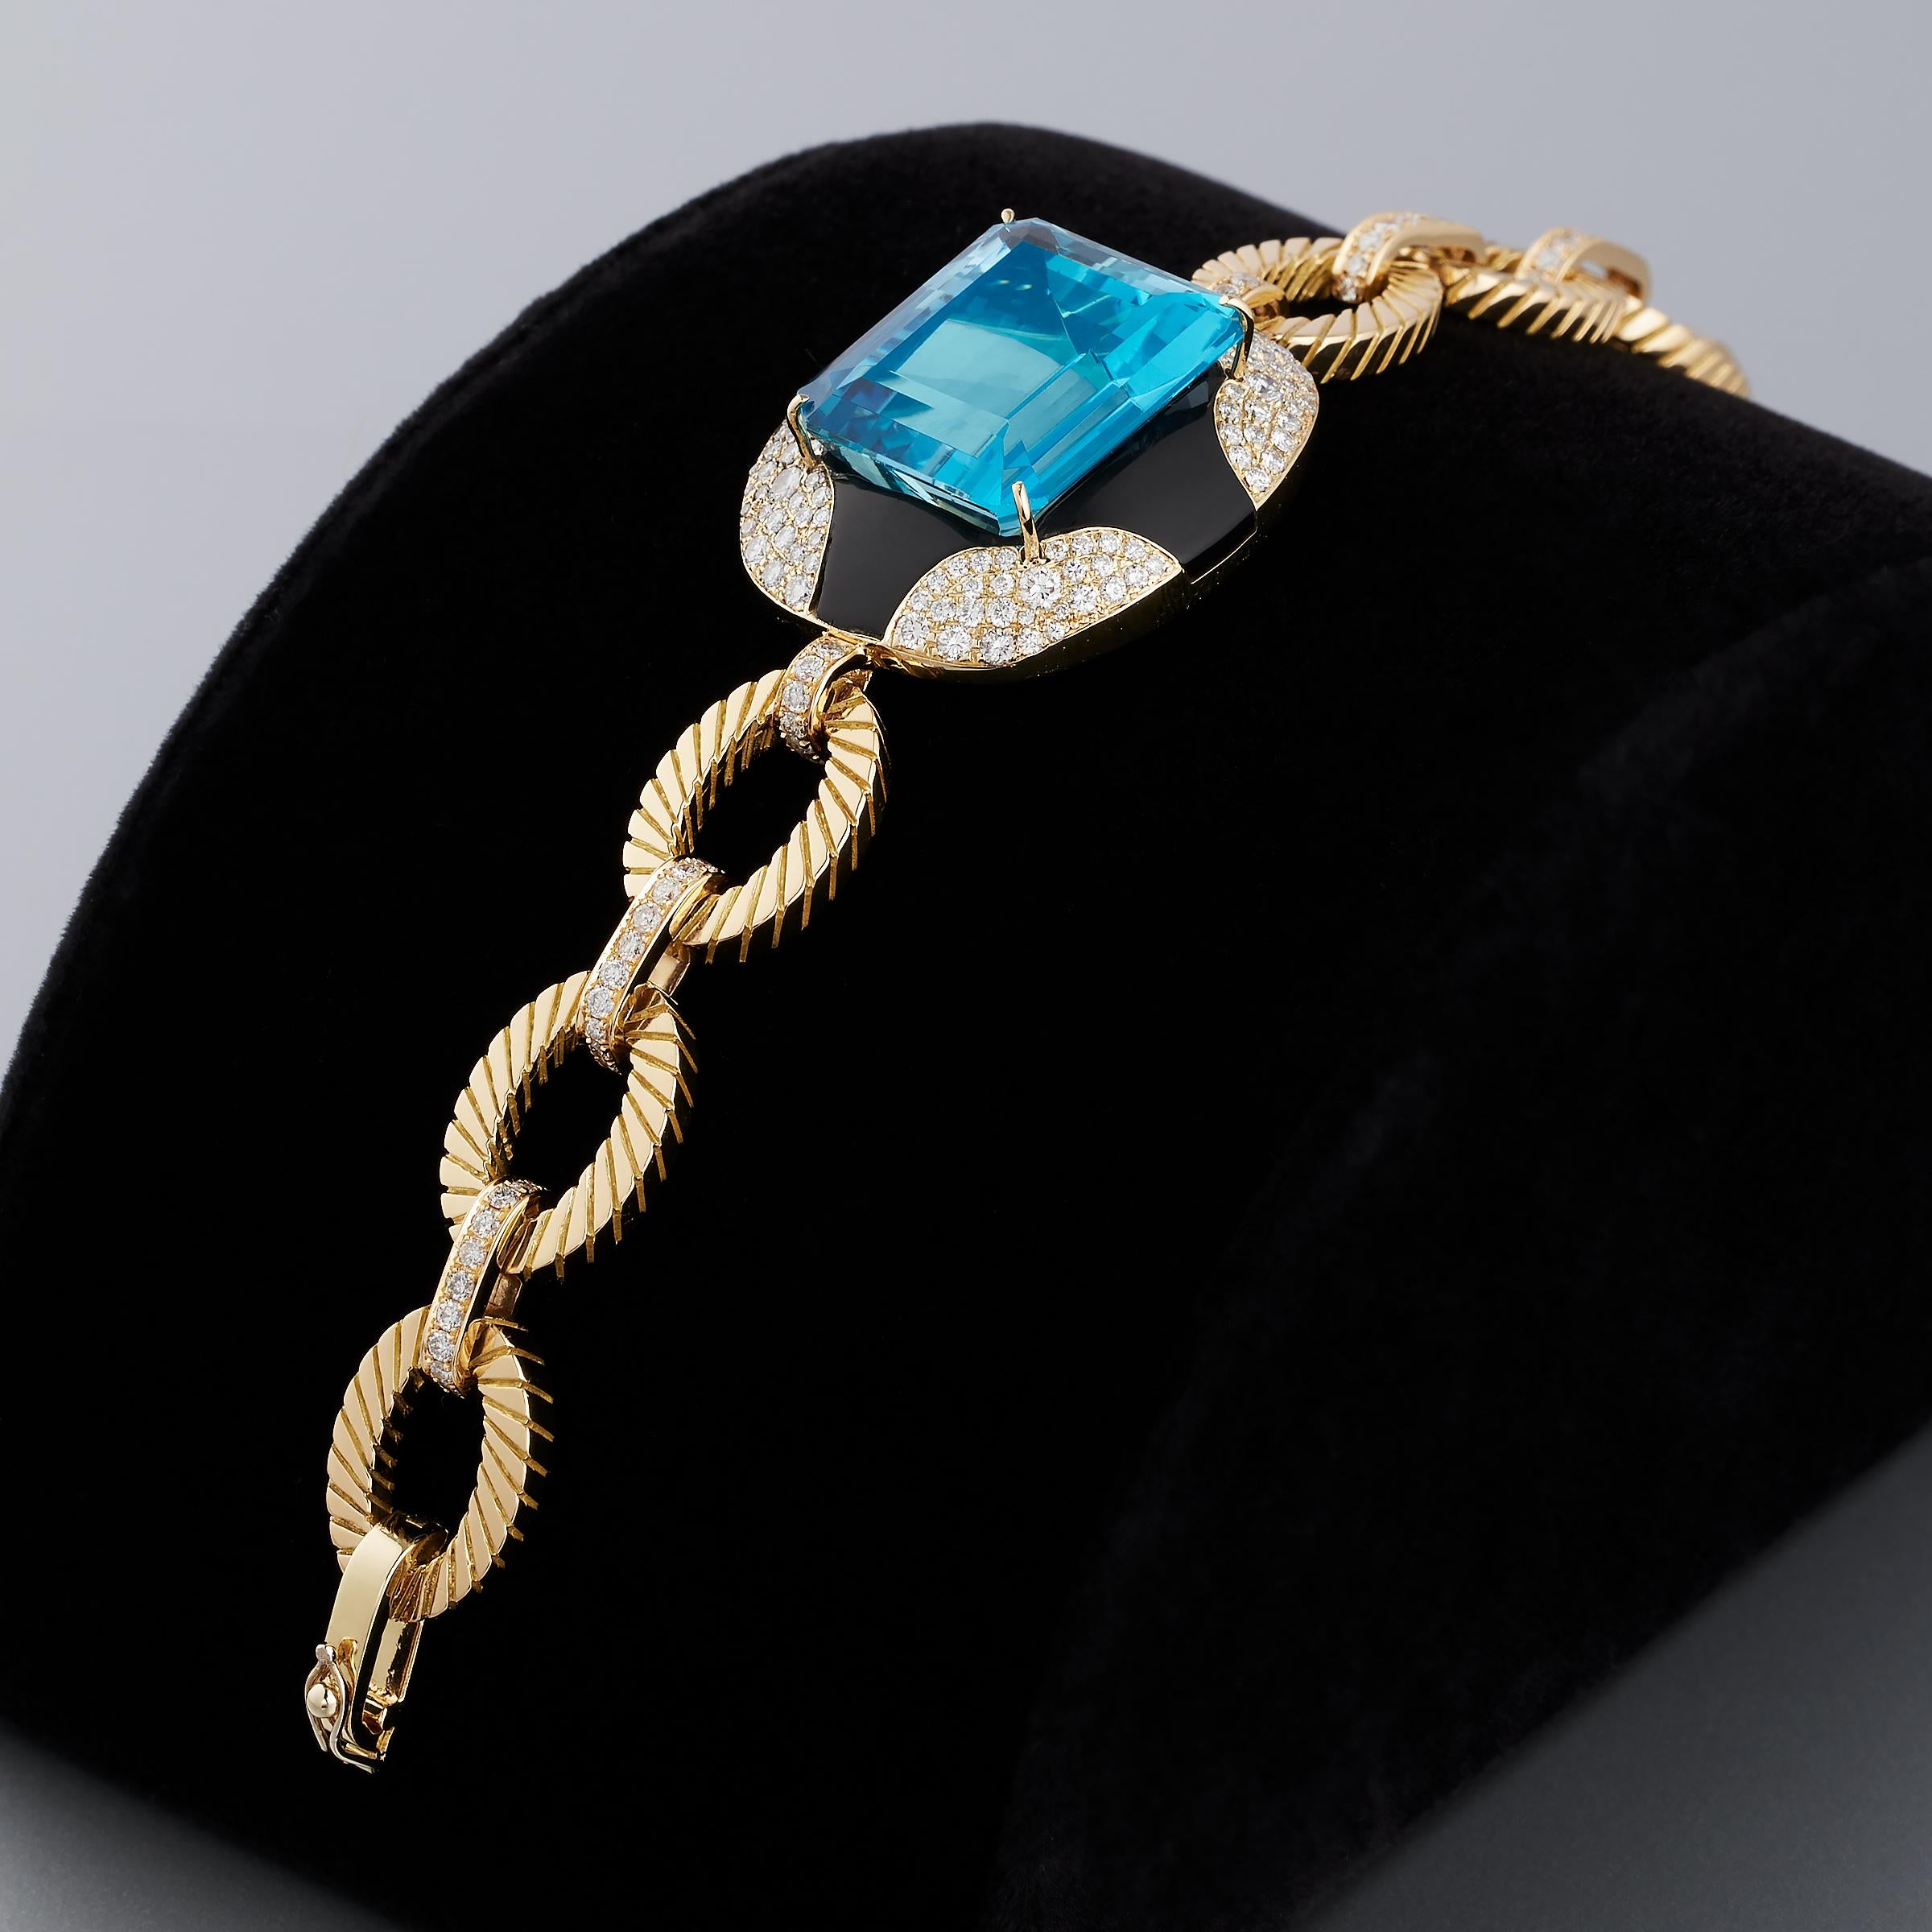 Exceptionnel bracelet en or jaune 18 carats, attribué à Mauboussin Paris, composé d'aigue-marine, de diamants et d'onyx noir. Ce bracelet impressionnant est une création vintage datant des années 1980 et est emblématique du glamour audacieux de la